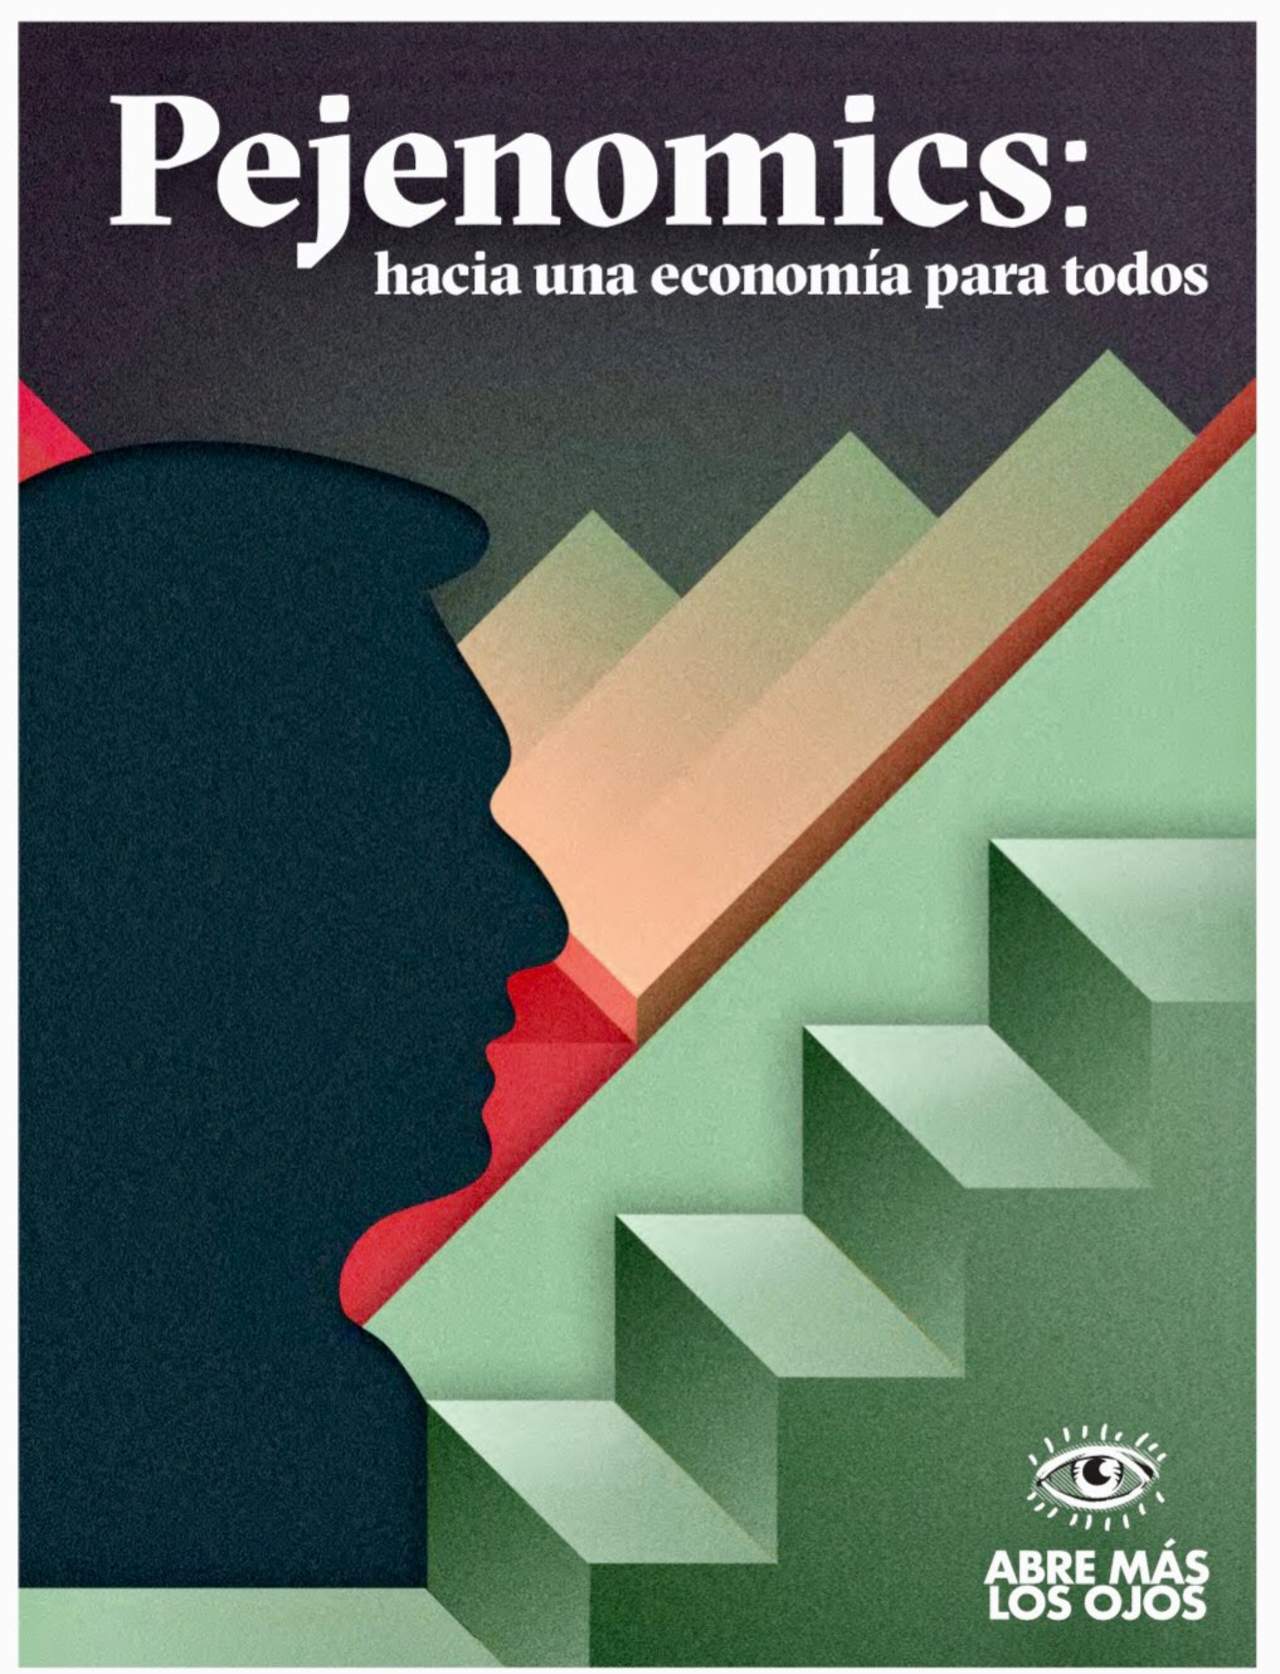 El equipo de campaña de Andrés Manuel López Obrador, candidato presidencial por la coalición Juntos Haremos Historia, lanzó este miércoles 'Pejenomics', un texto que explica las líneas generales del plan económico del tabasqueño. (TWITTER)